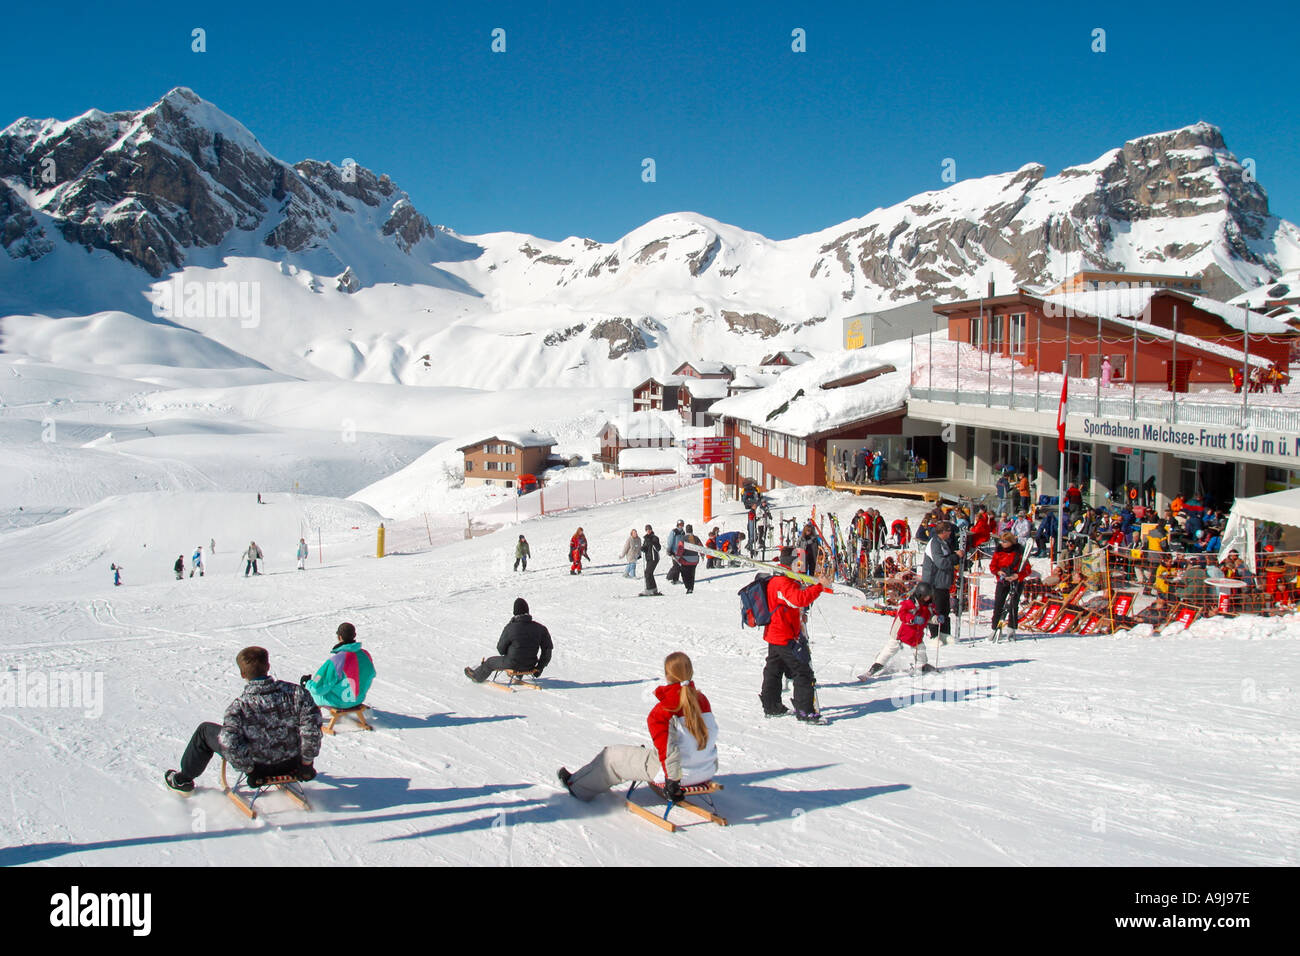 Melchsee Frutt centrale suisse région de sports d'hiver les gens de la luge Banque D'Images